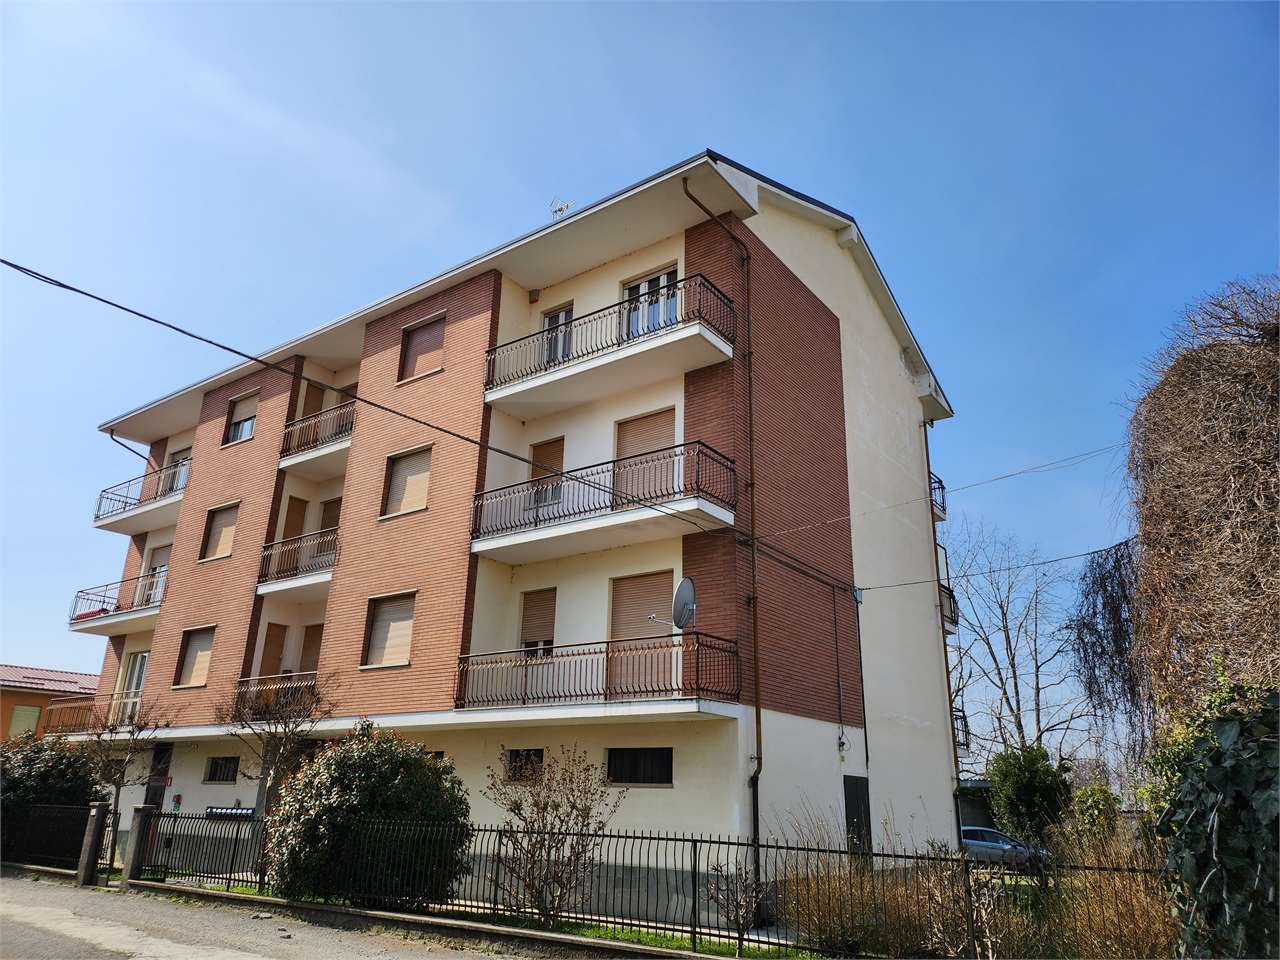 Appartamento in vendita a Sant'Albano Stura, 3 locali, prezzo € 85.000 | PortaleAgenzieImmobiliari.it